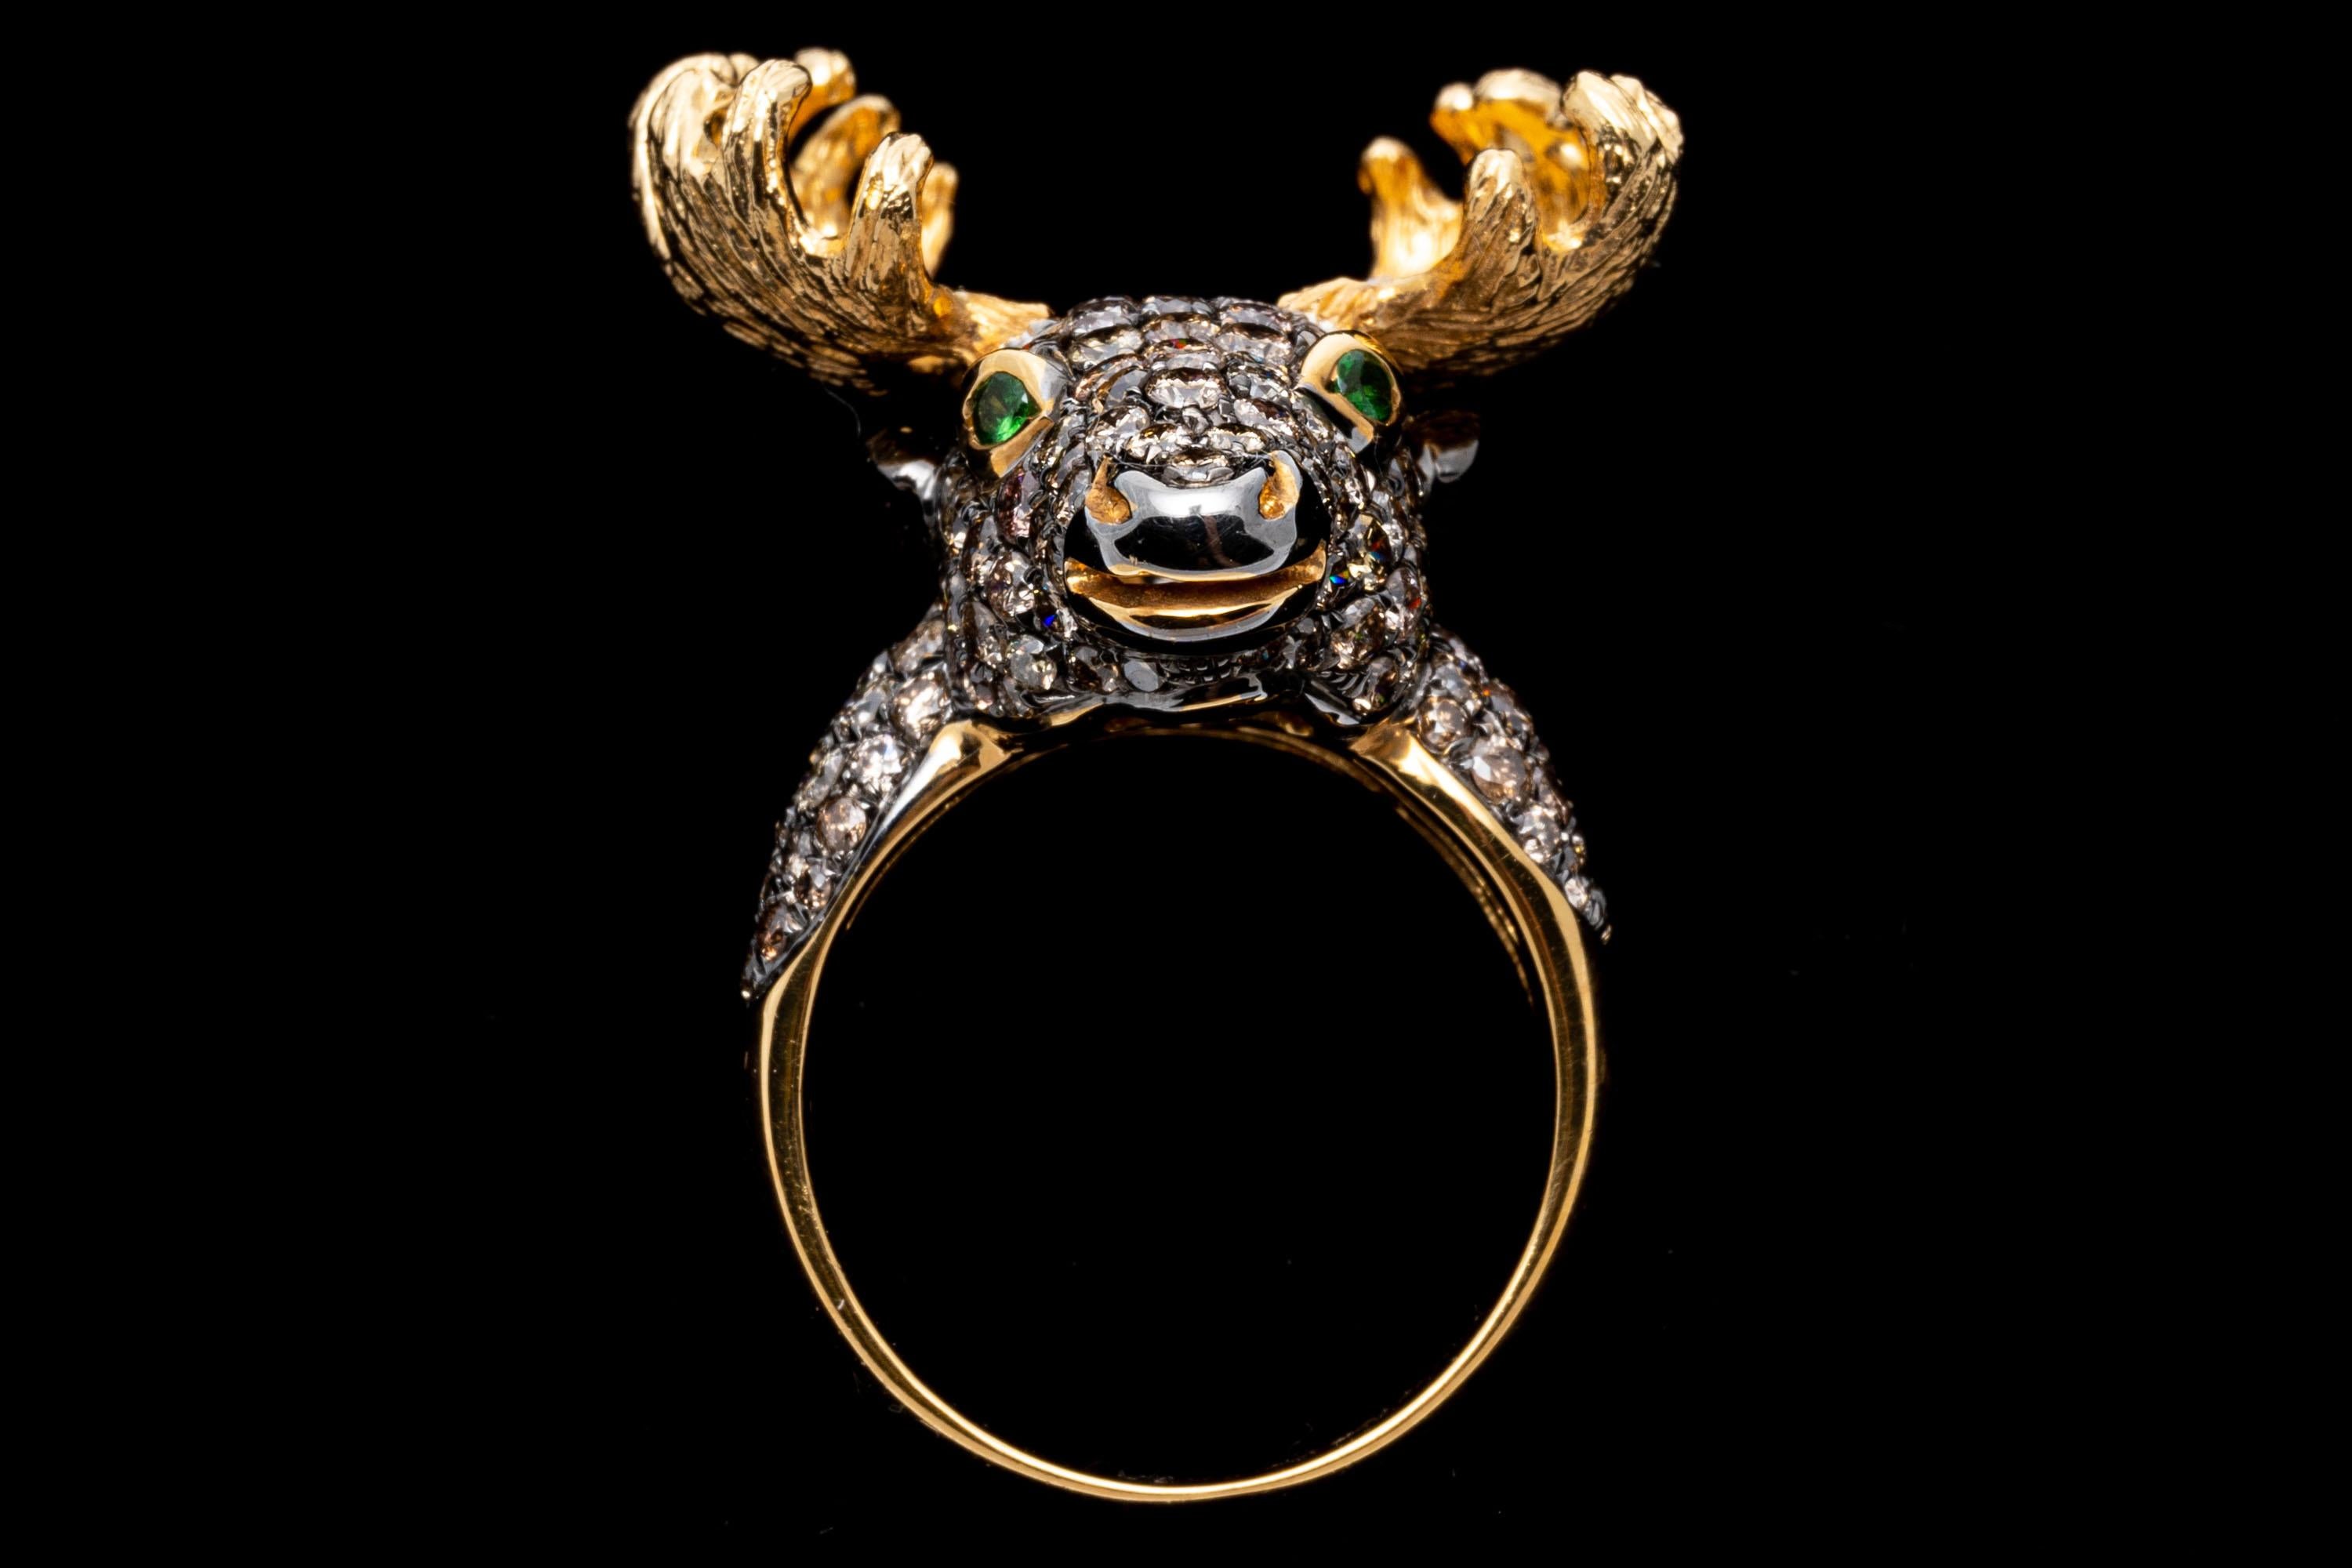 moose ring